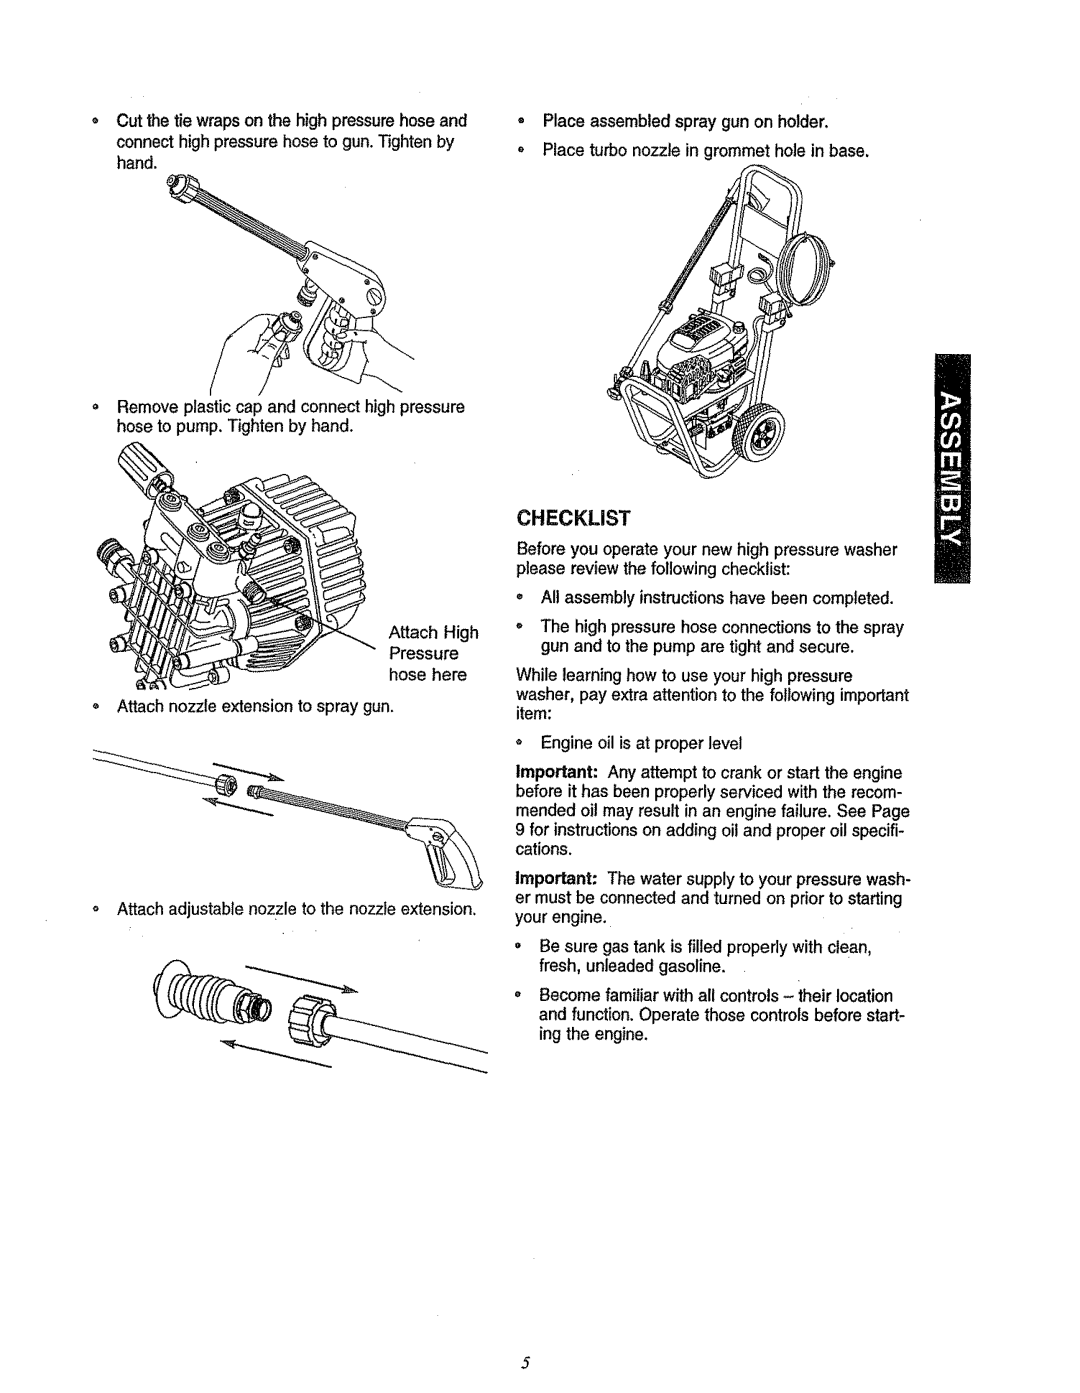 Craftsman 580.7622 manual Checklist 